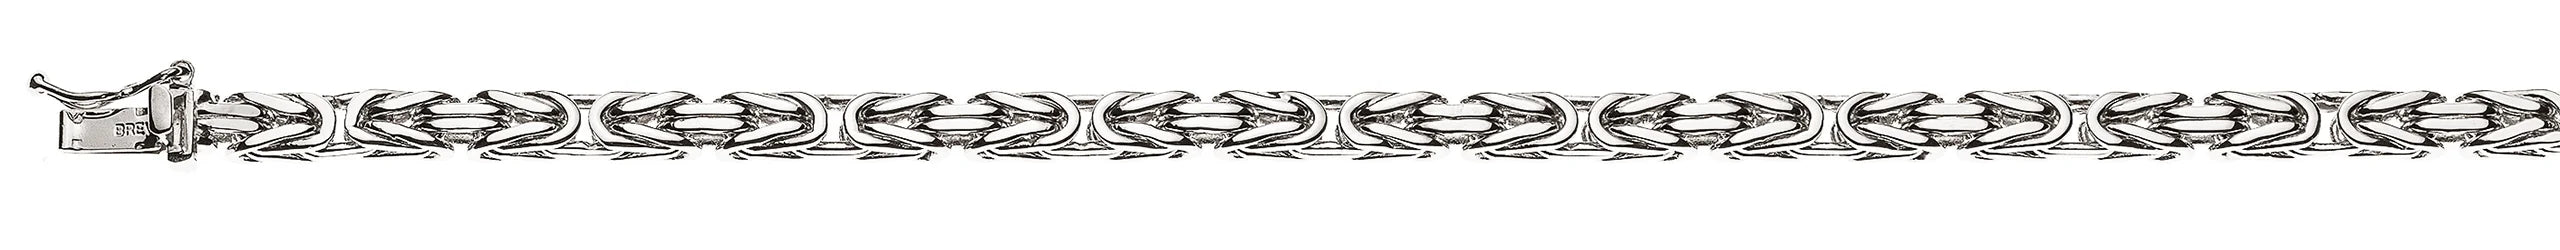 Armband Königskette klassisch Weissgold 750 ca. 4.0mm x 22cm